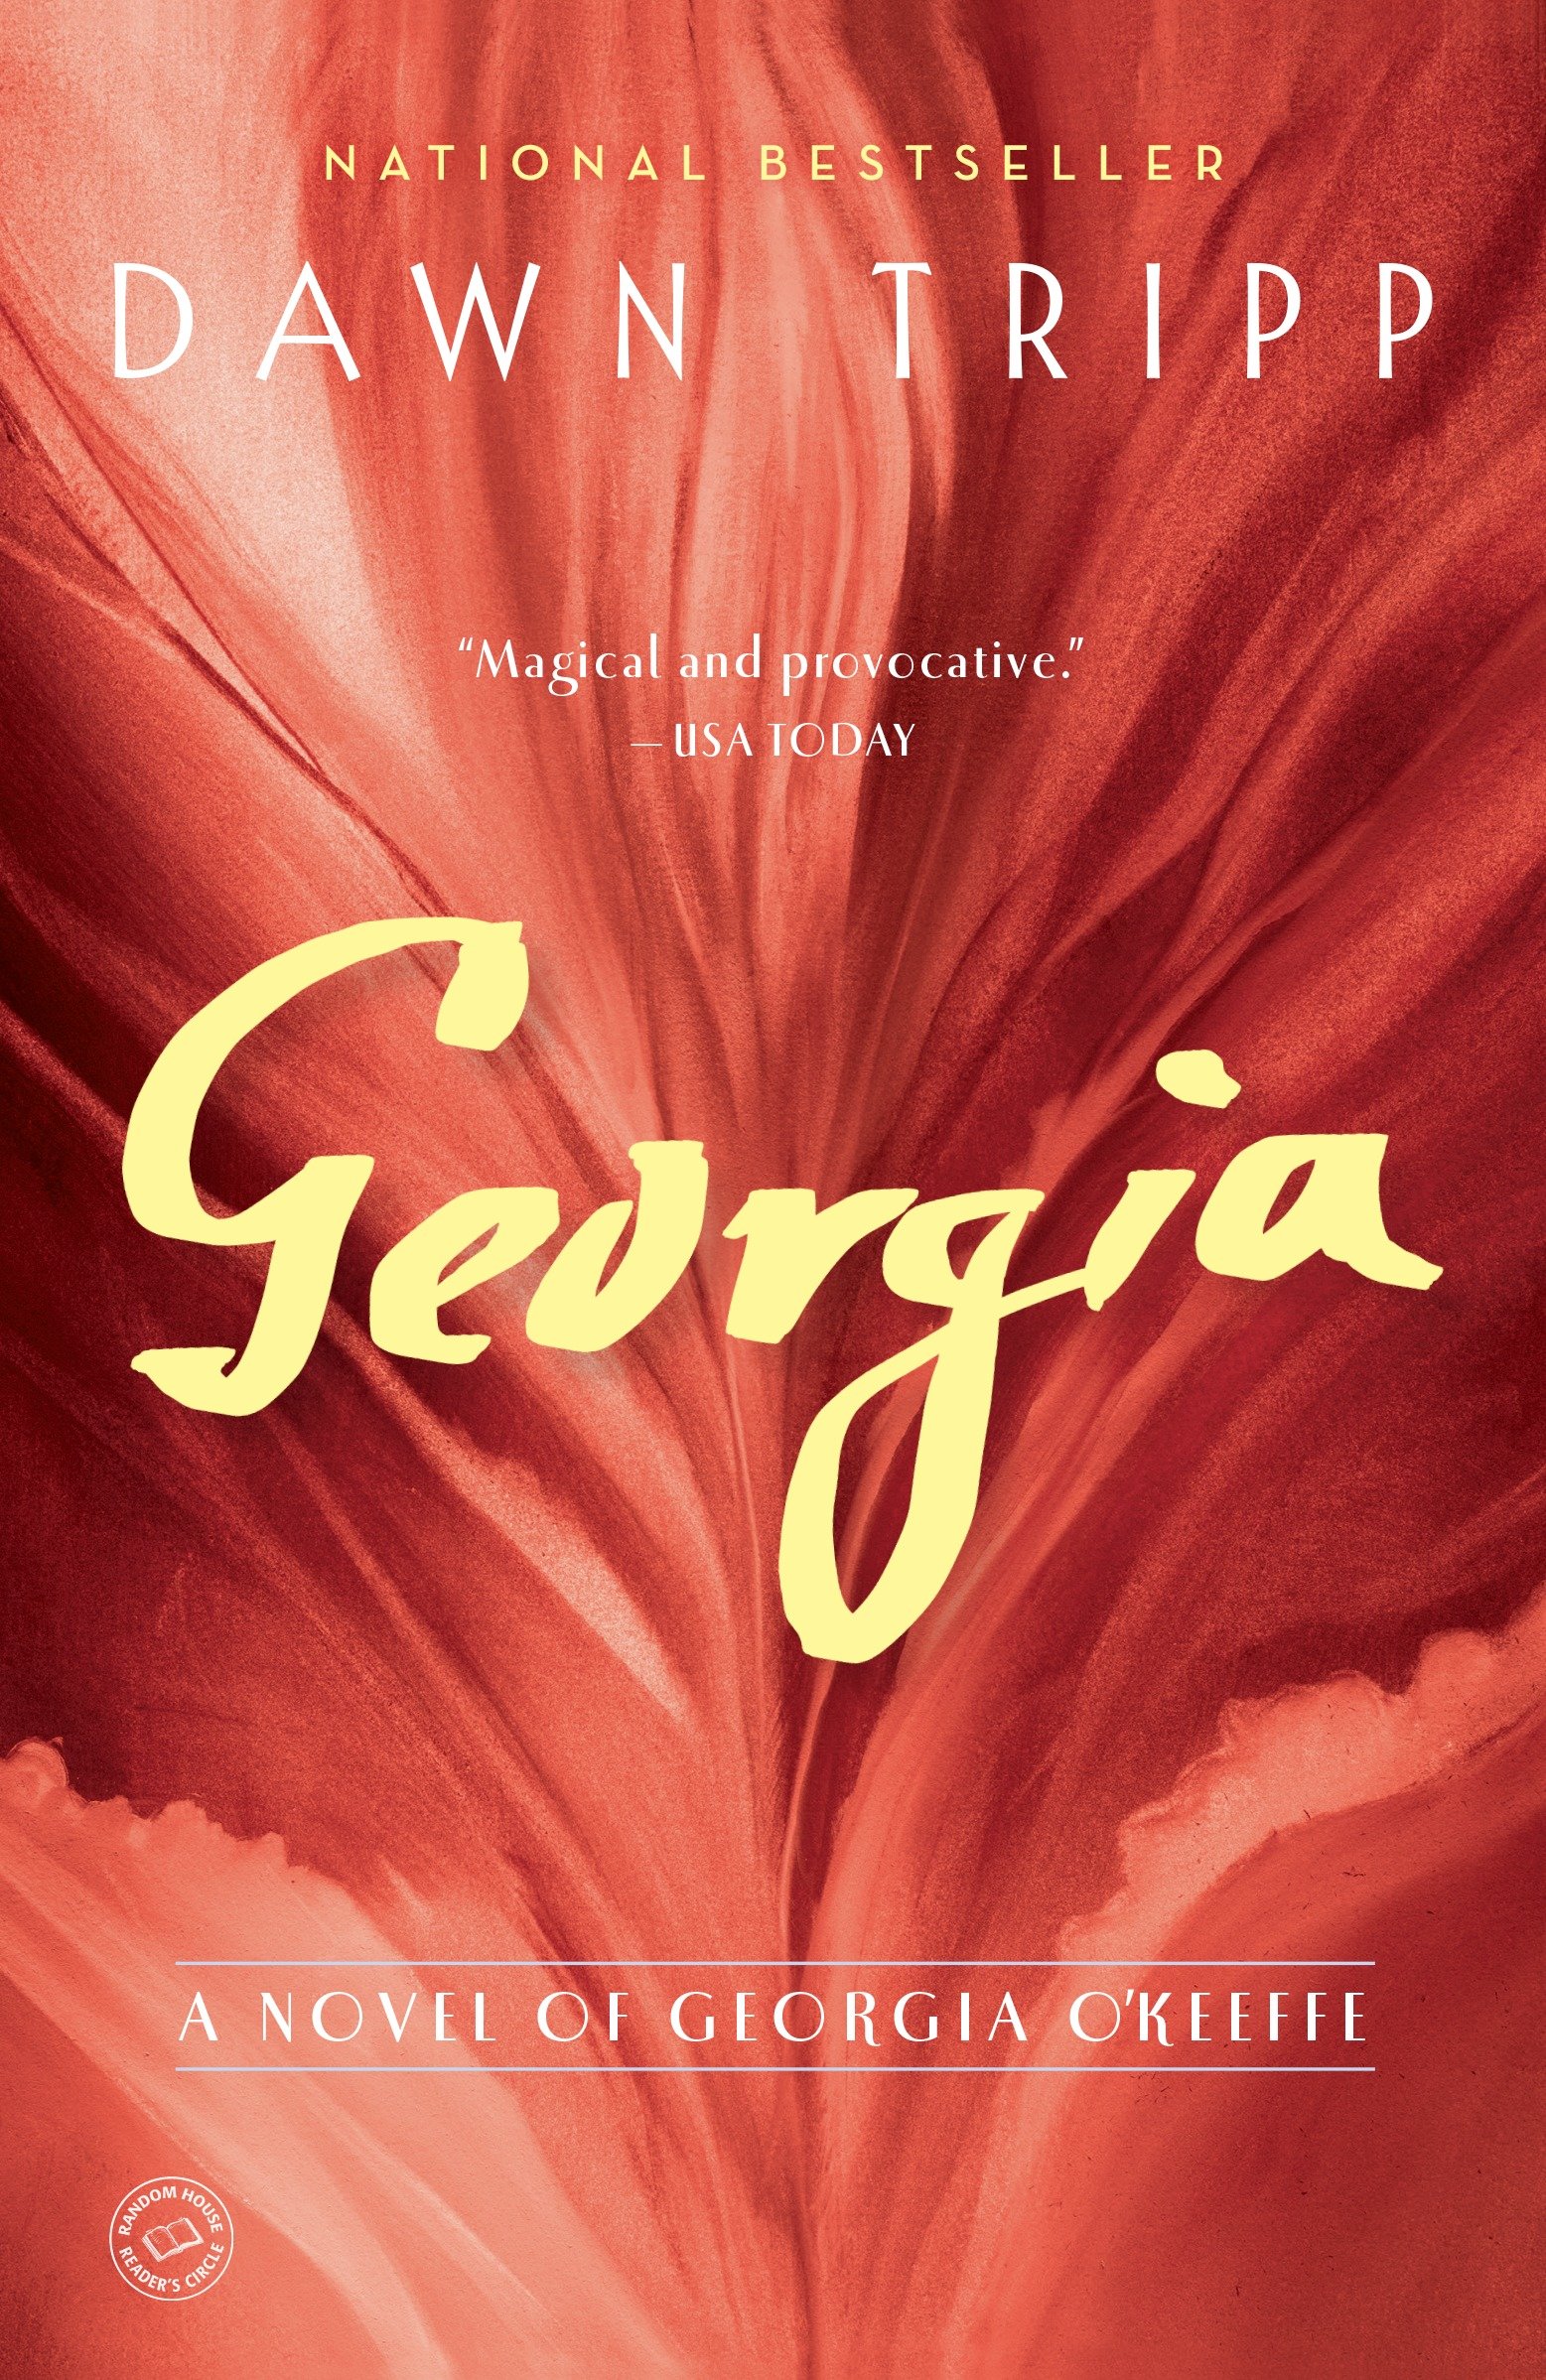 Georgia a novel of Georgia O'Keeffe cover image